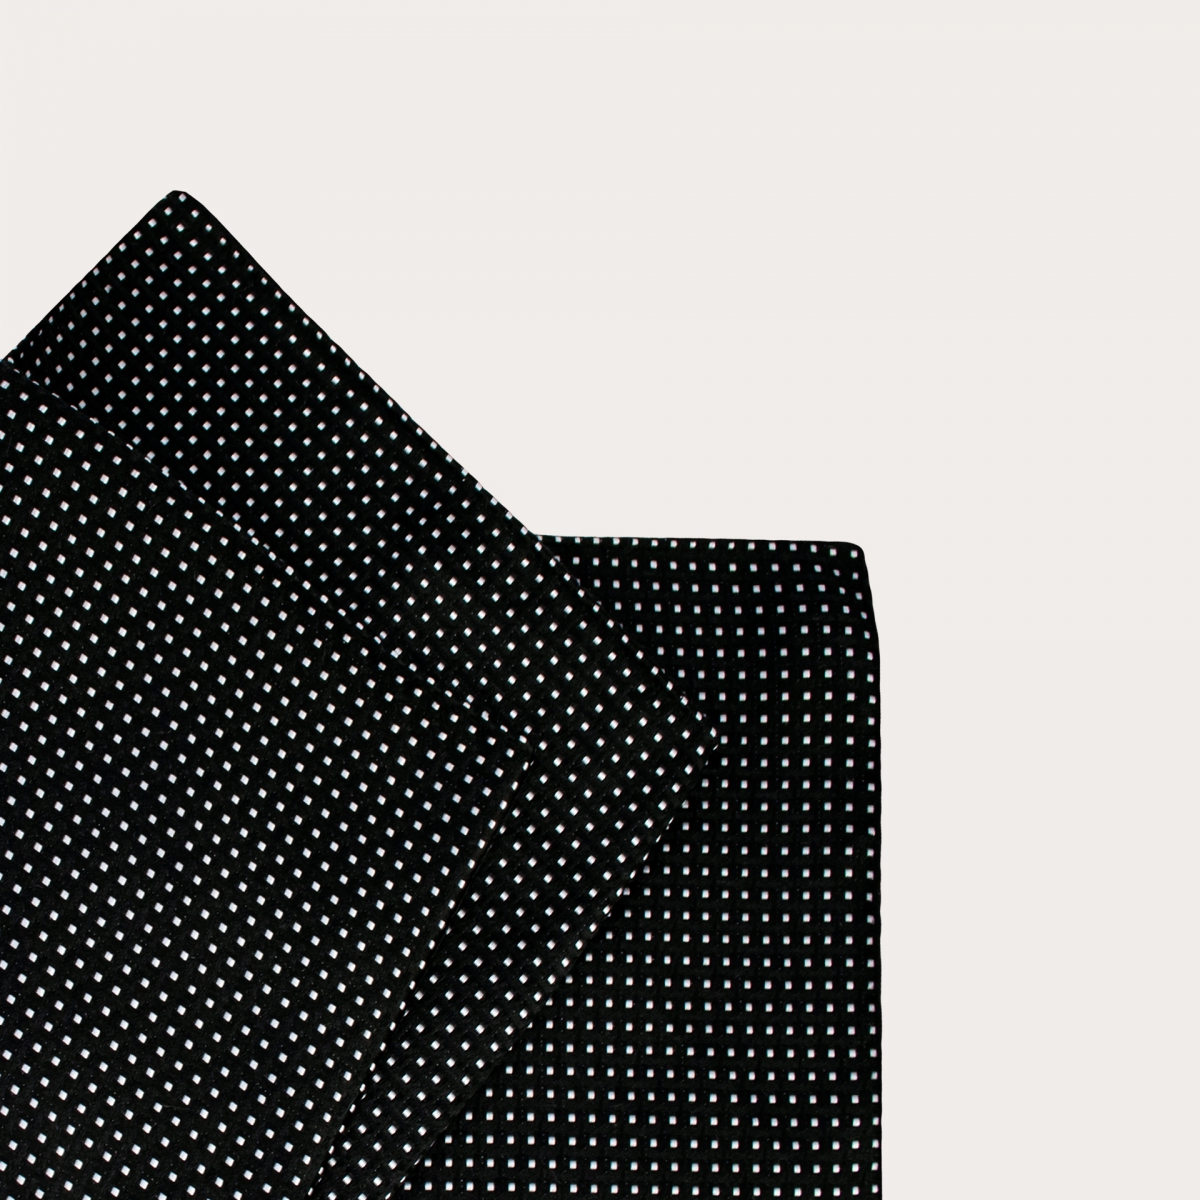 Einstecktuch aus reiner Jacquard-Seide, schwarz mit geometrischem Muster